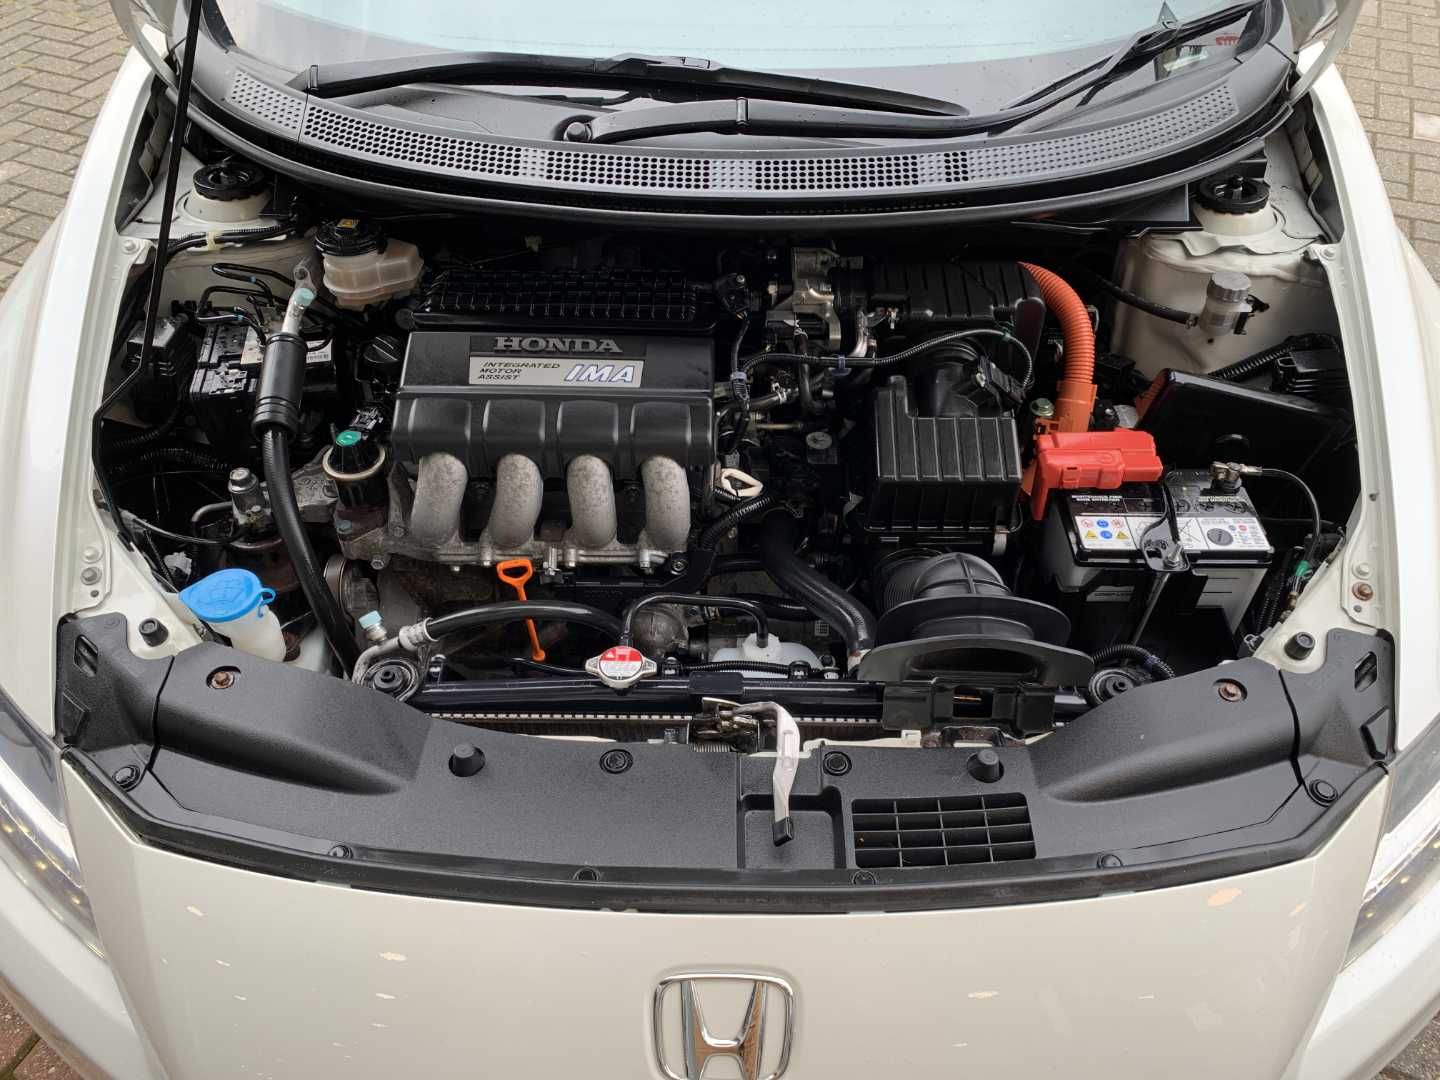 Honda CR-Z 1.5 IMA 137 GT-T Hybrid 3dr - Image 20